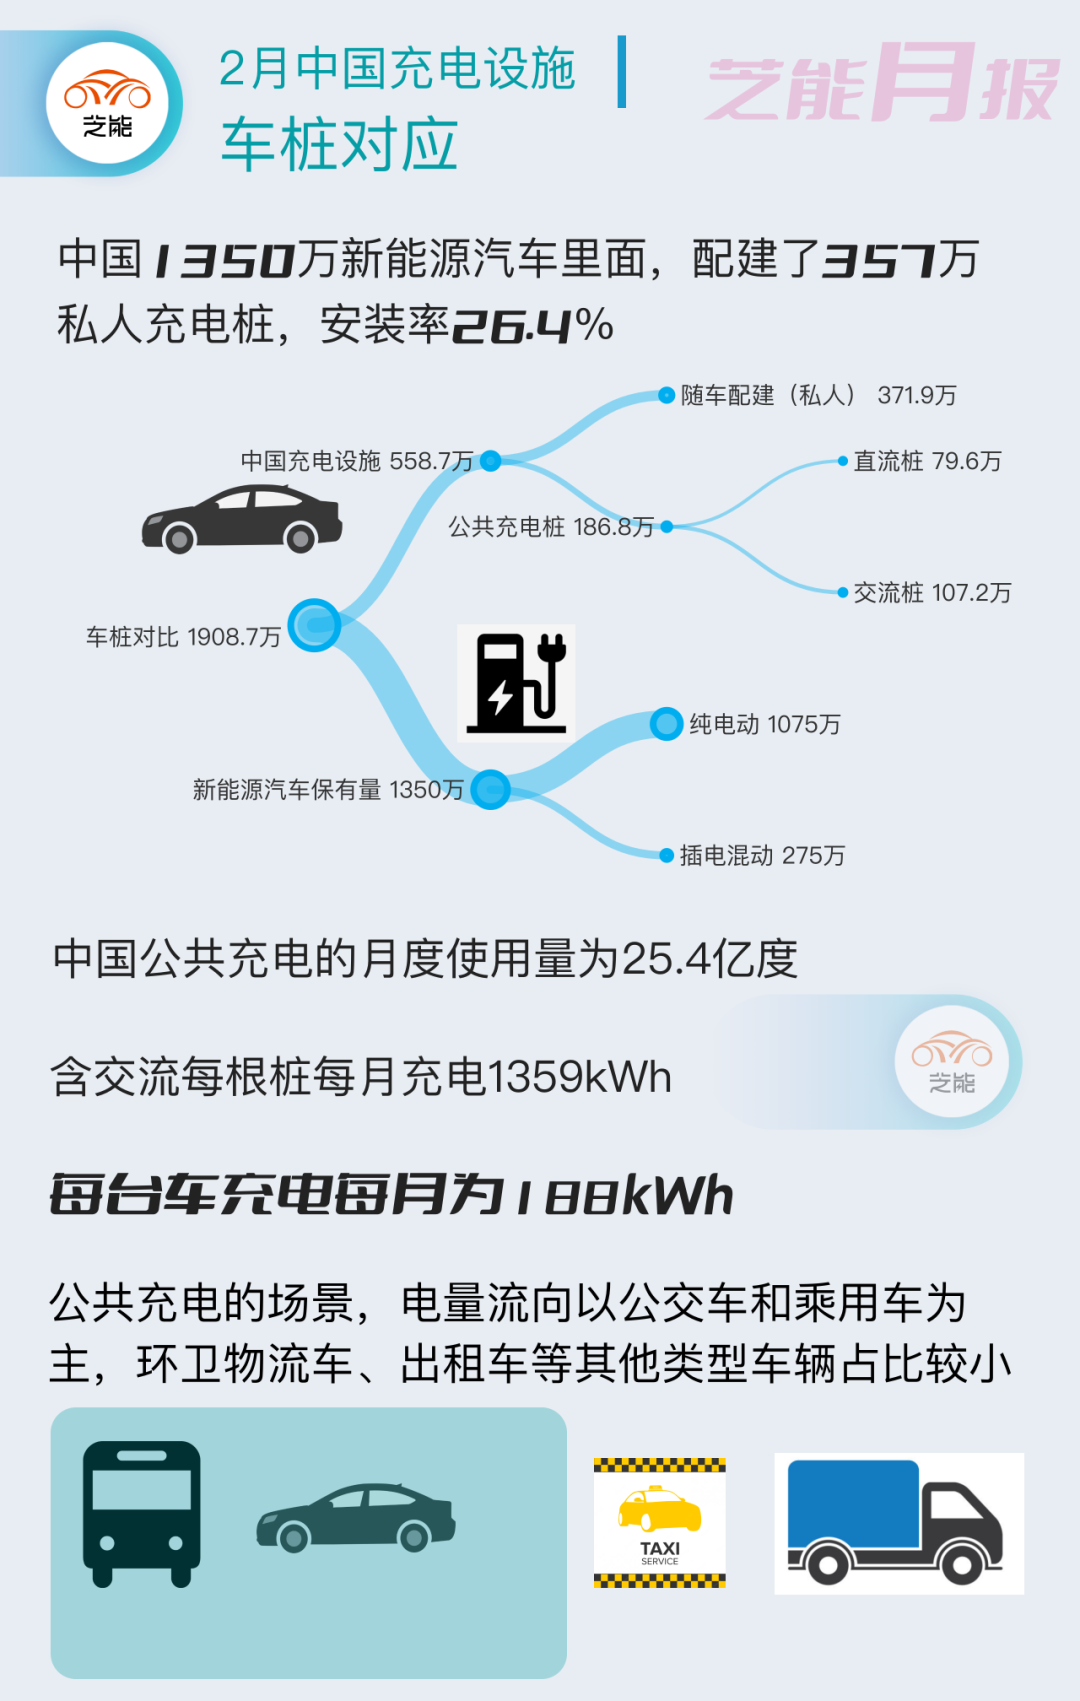 2023年2月中国充电设施市场报告